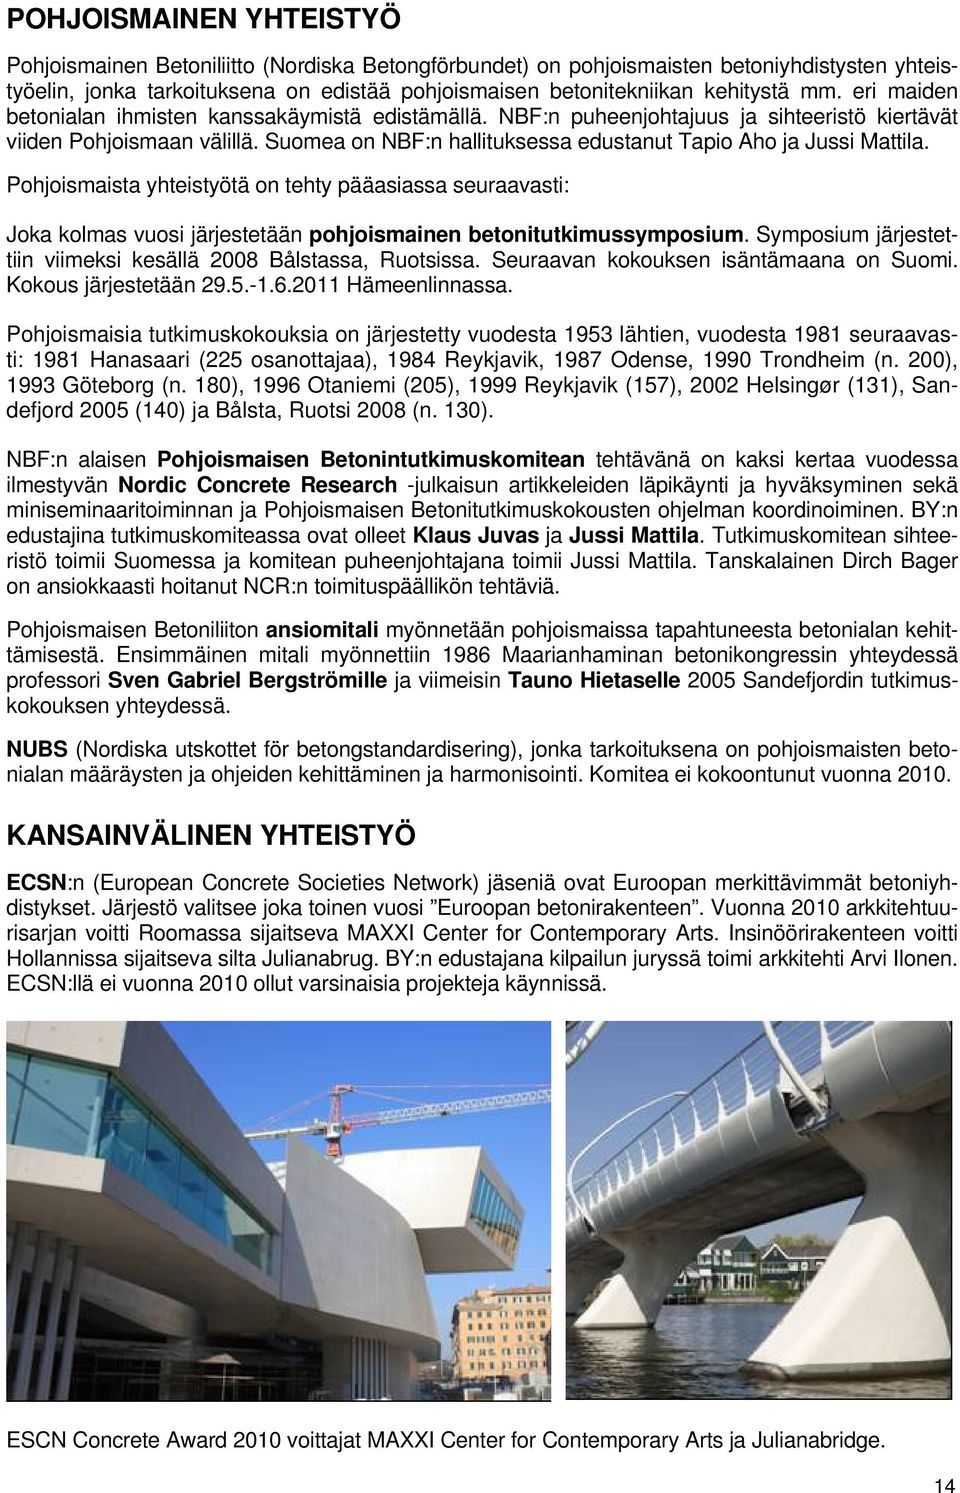 Suomea on NBF:n hallituksessa edustanut Tapio Aho ja Jussi Mattila. Pohjoismaista yhteistyötä on tehty pääasiassa seuraavasti: Joka kolmas vuosi järjestetään pohjoismainen betonitutkimussymposium.